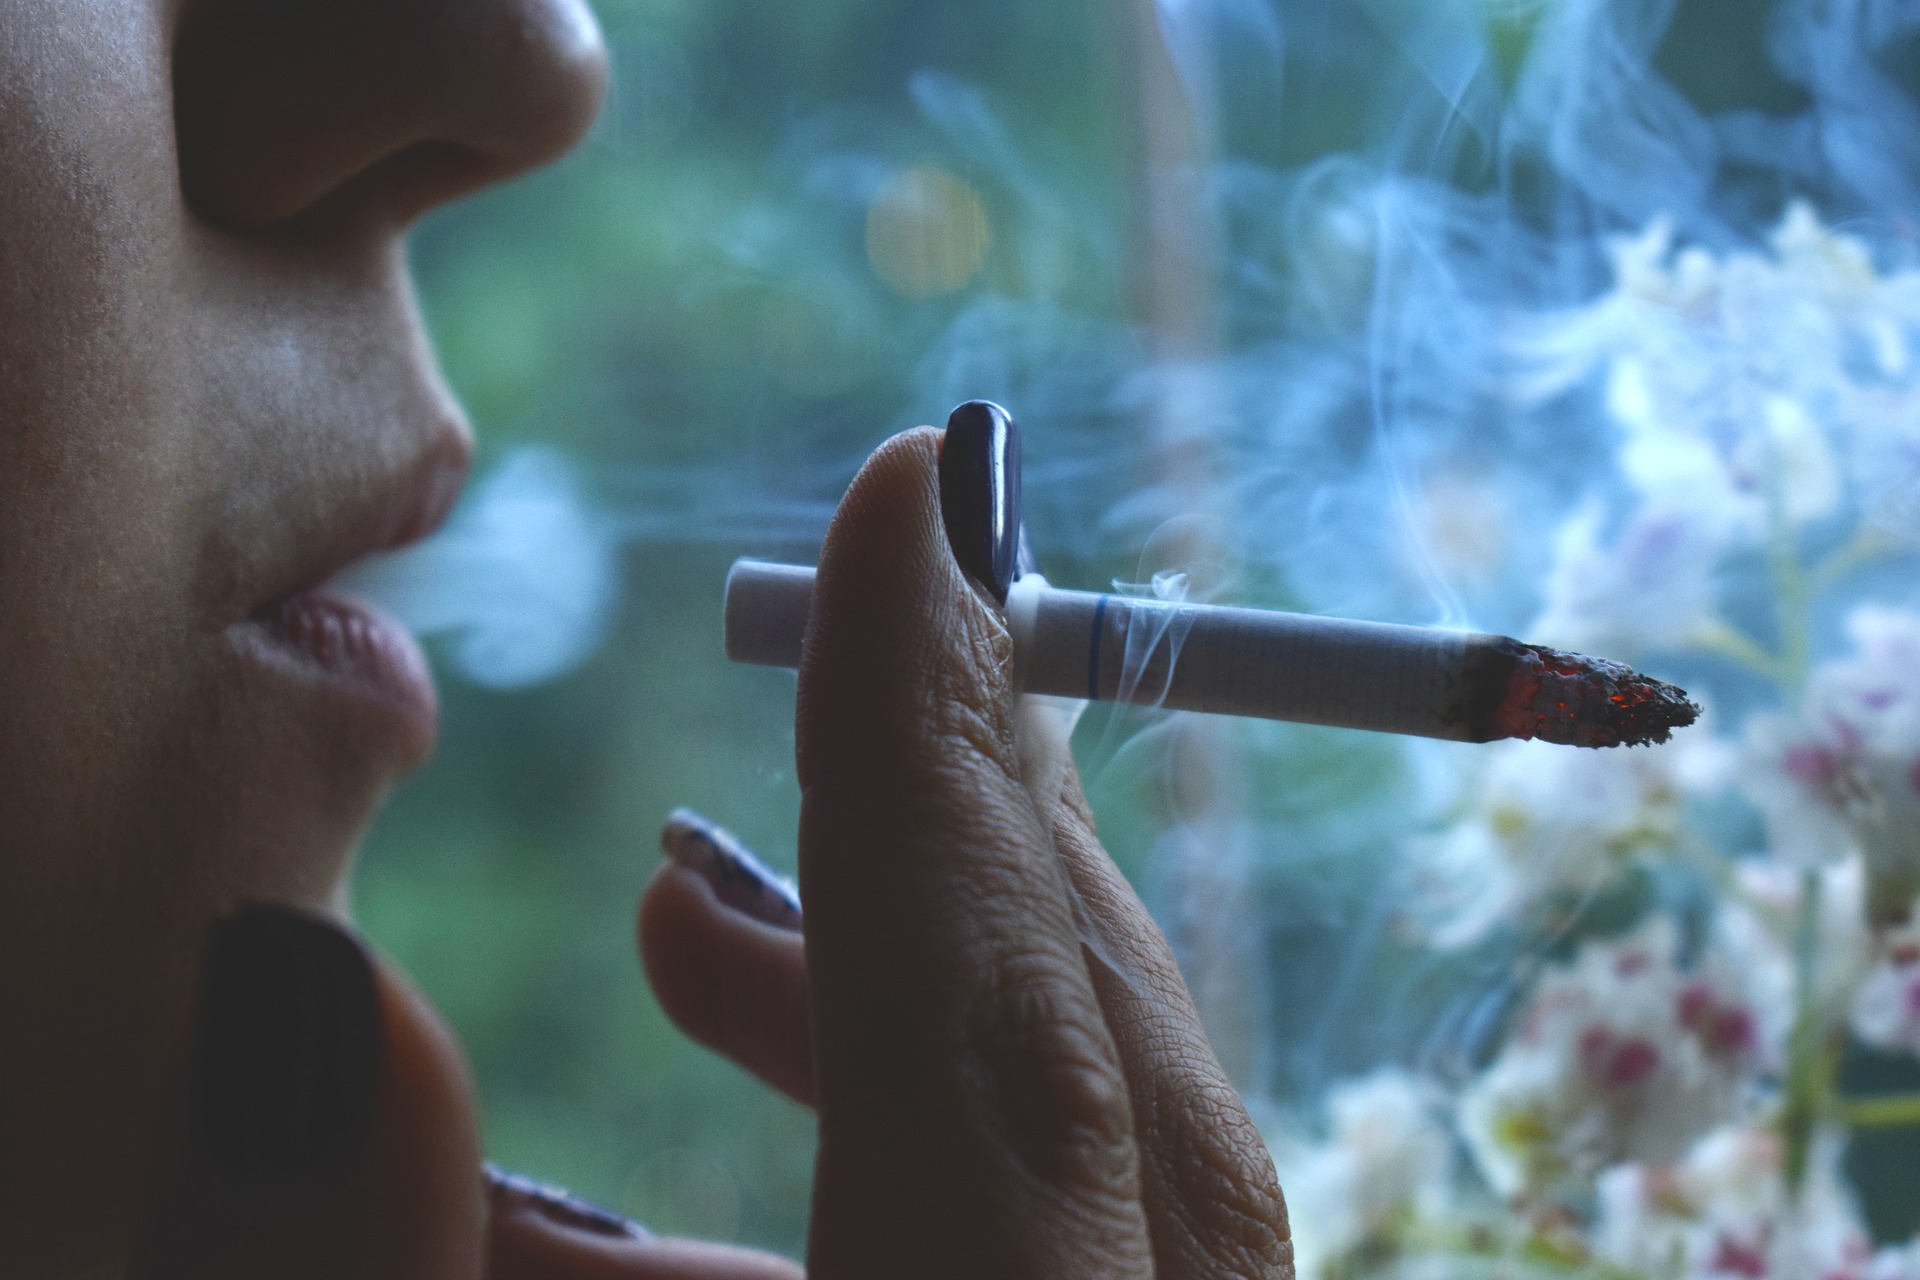 Ženy majú tendenciu prestať s fajčením ťažšie ako muži a fajčiarky majú zároveň väčšie zdravotné problémy spojené s týmto zlozvykom ako muži.